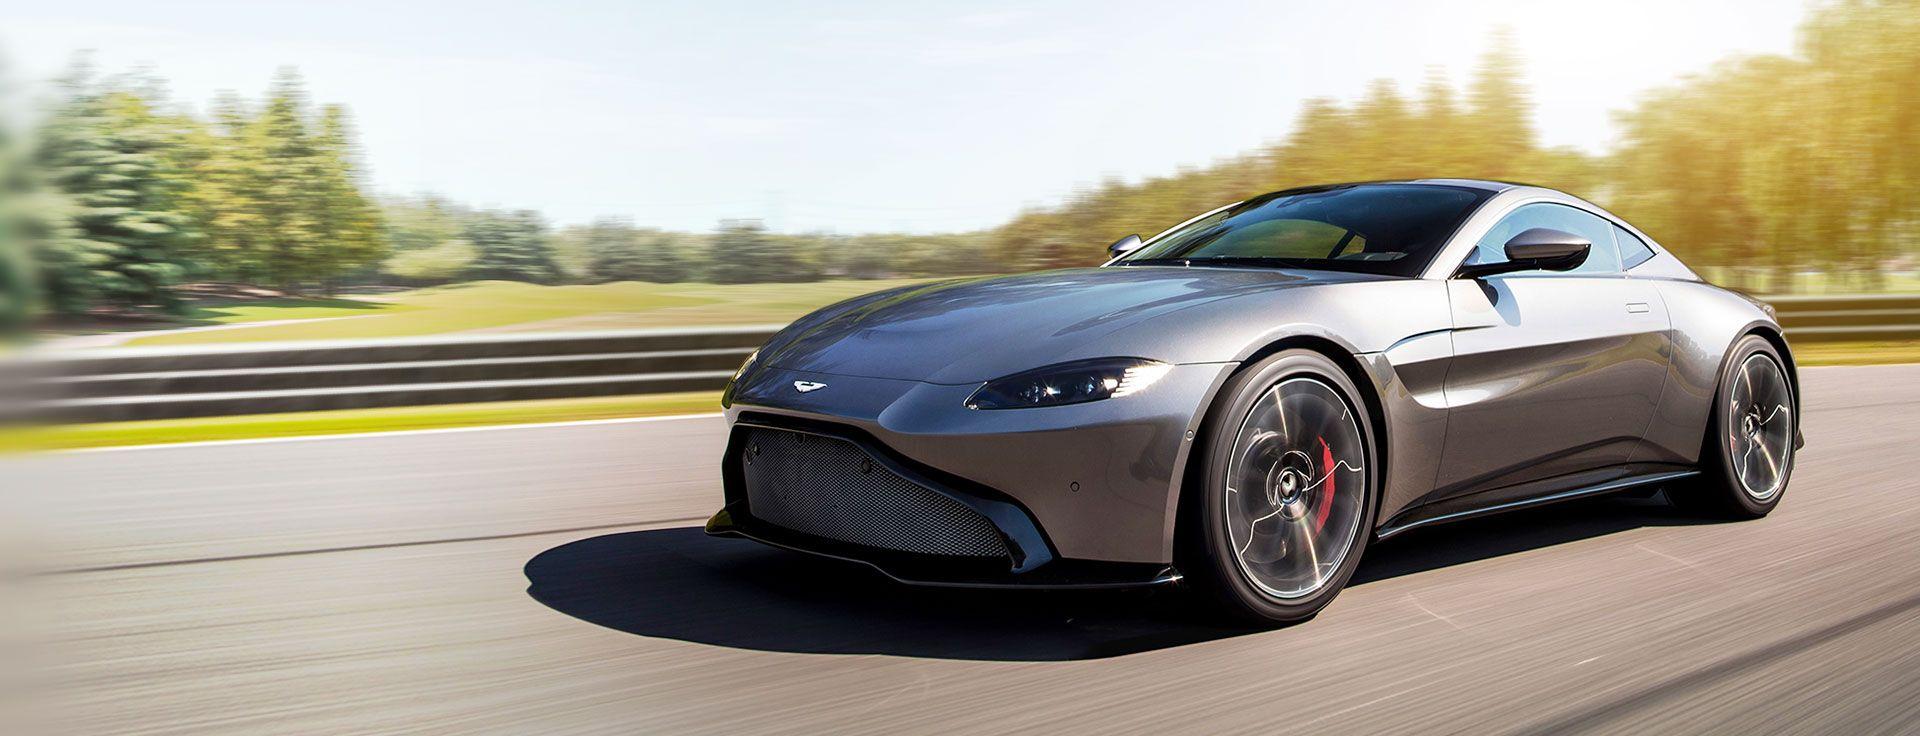  Aston Martin - Pirelli and Aston Martin